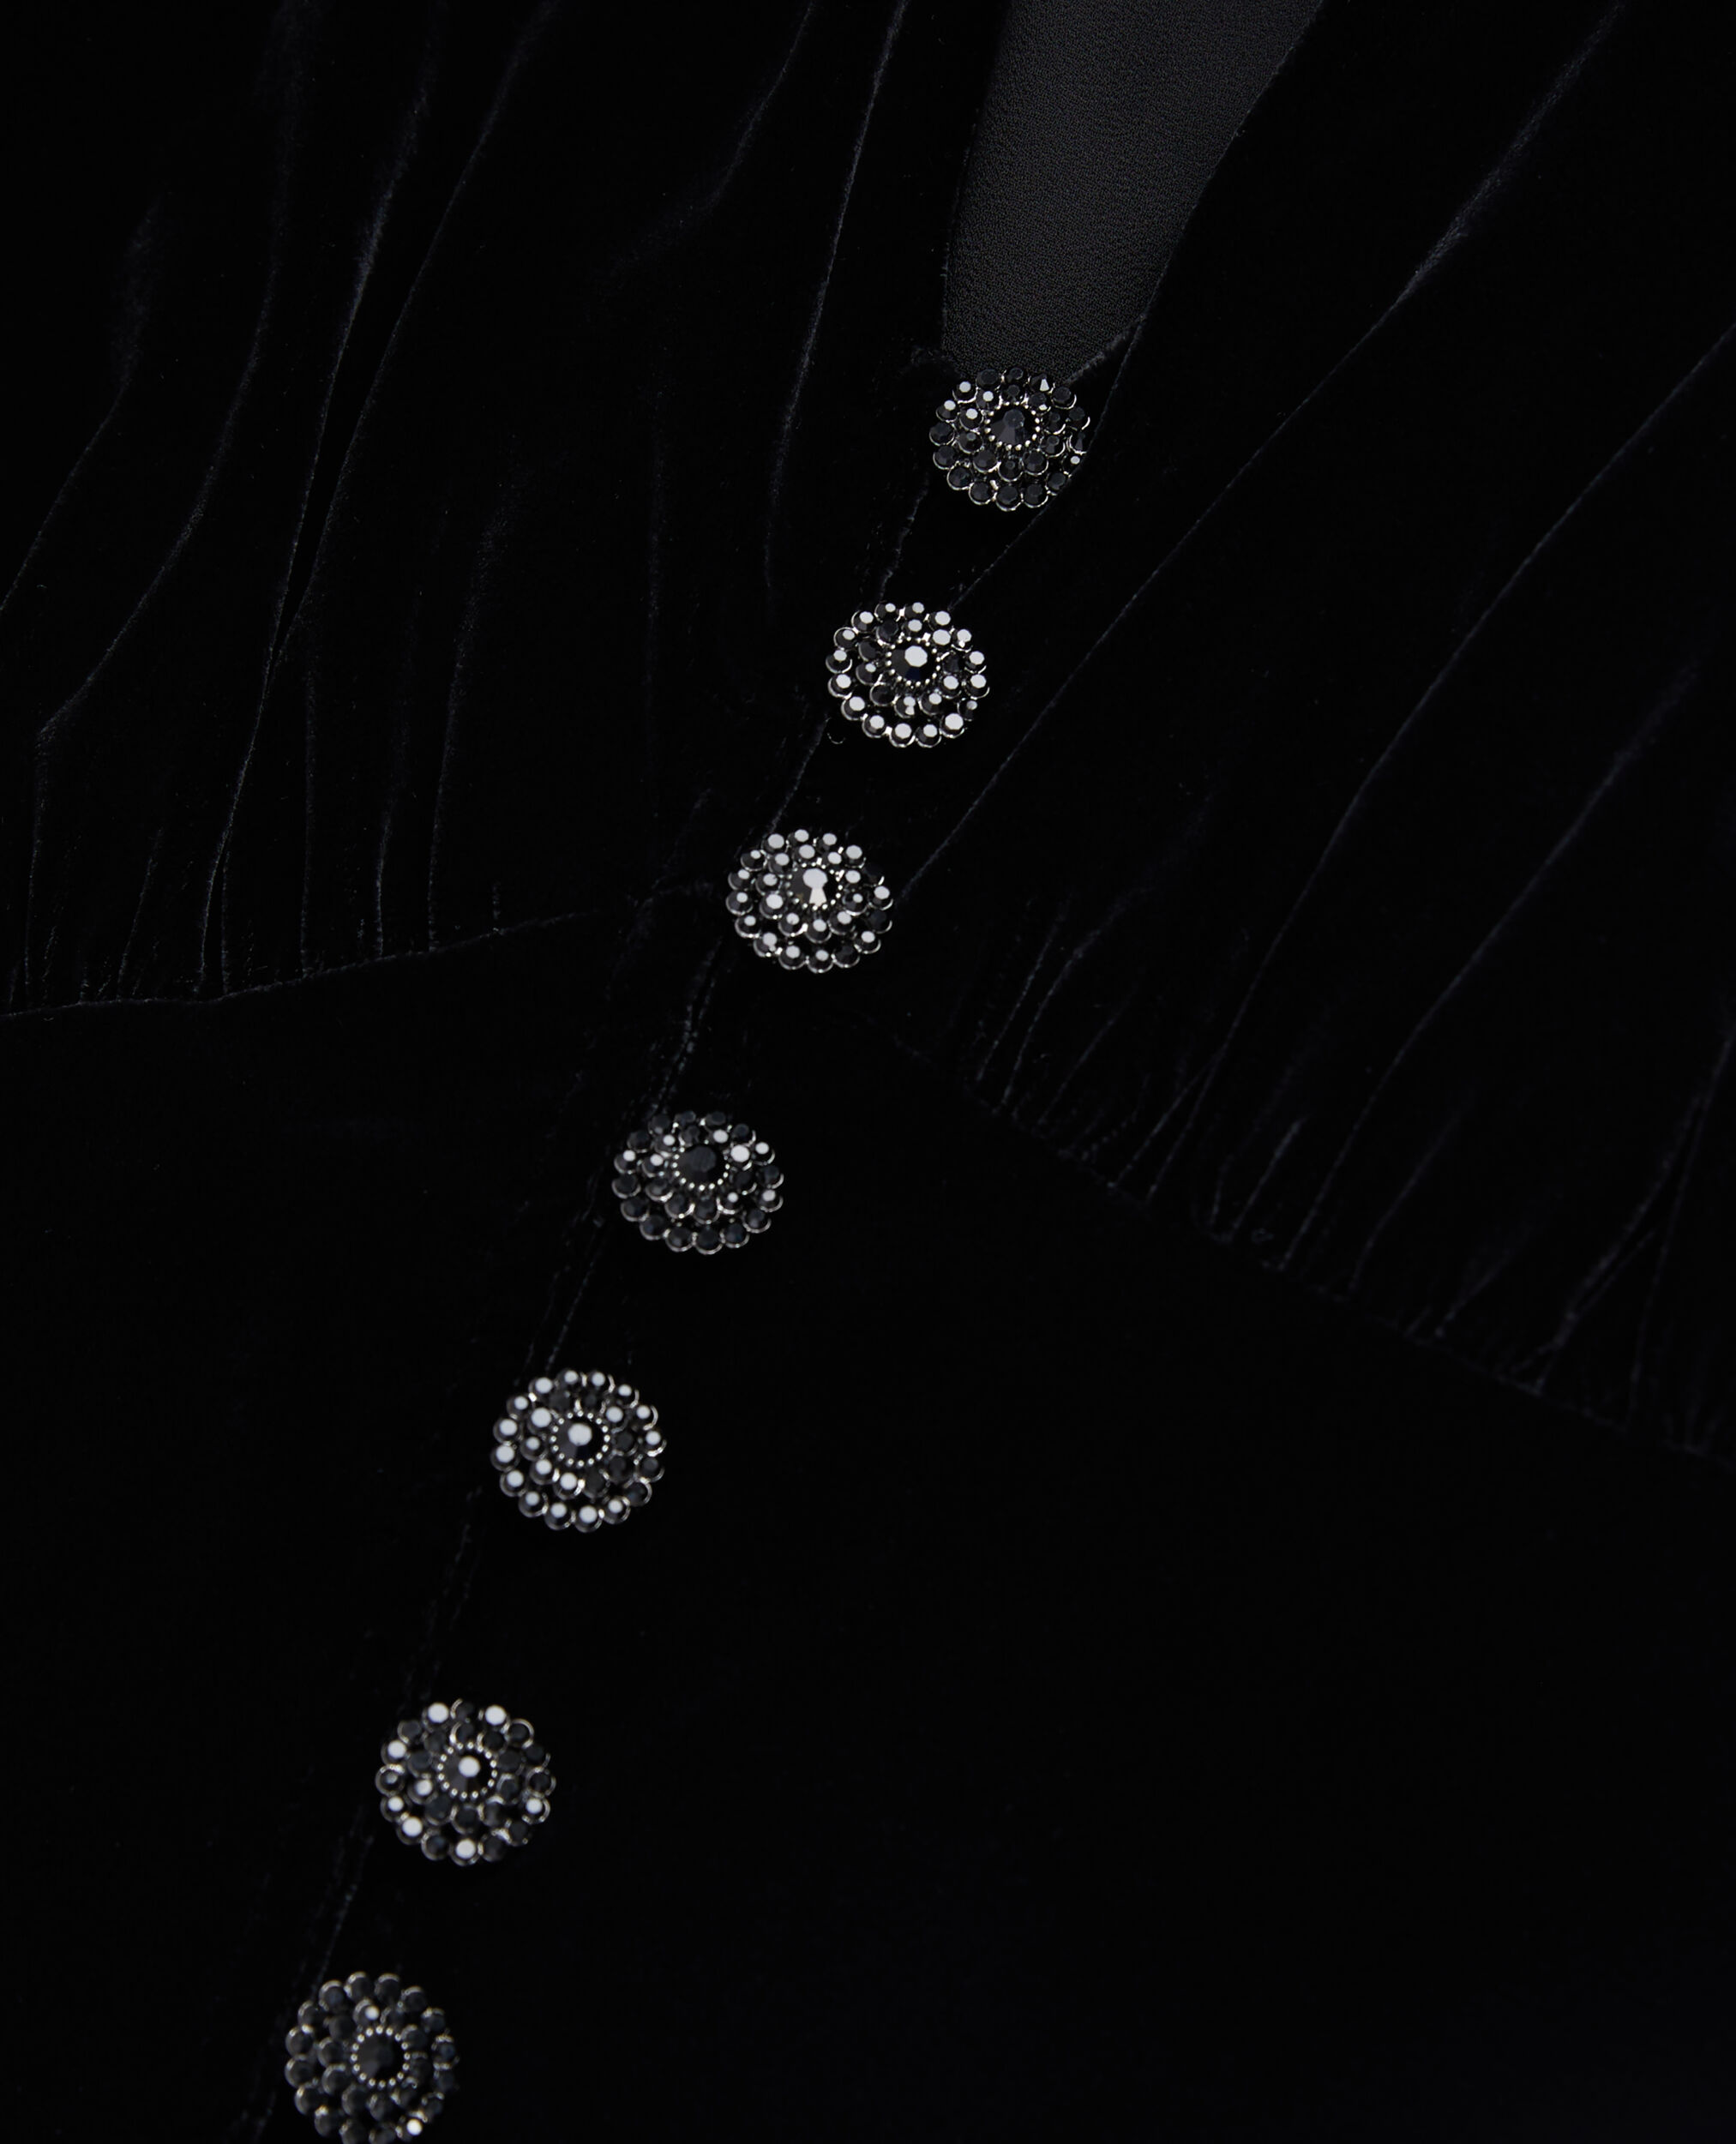 Robe longue noire en velours avec boutonnage, BLACK, hi-res image number null